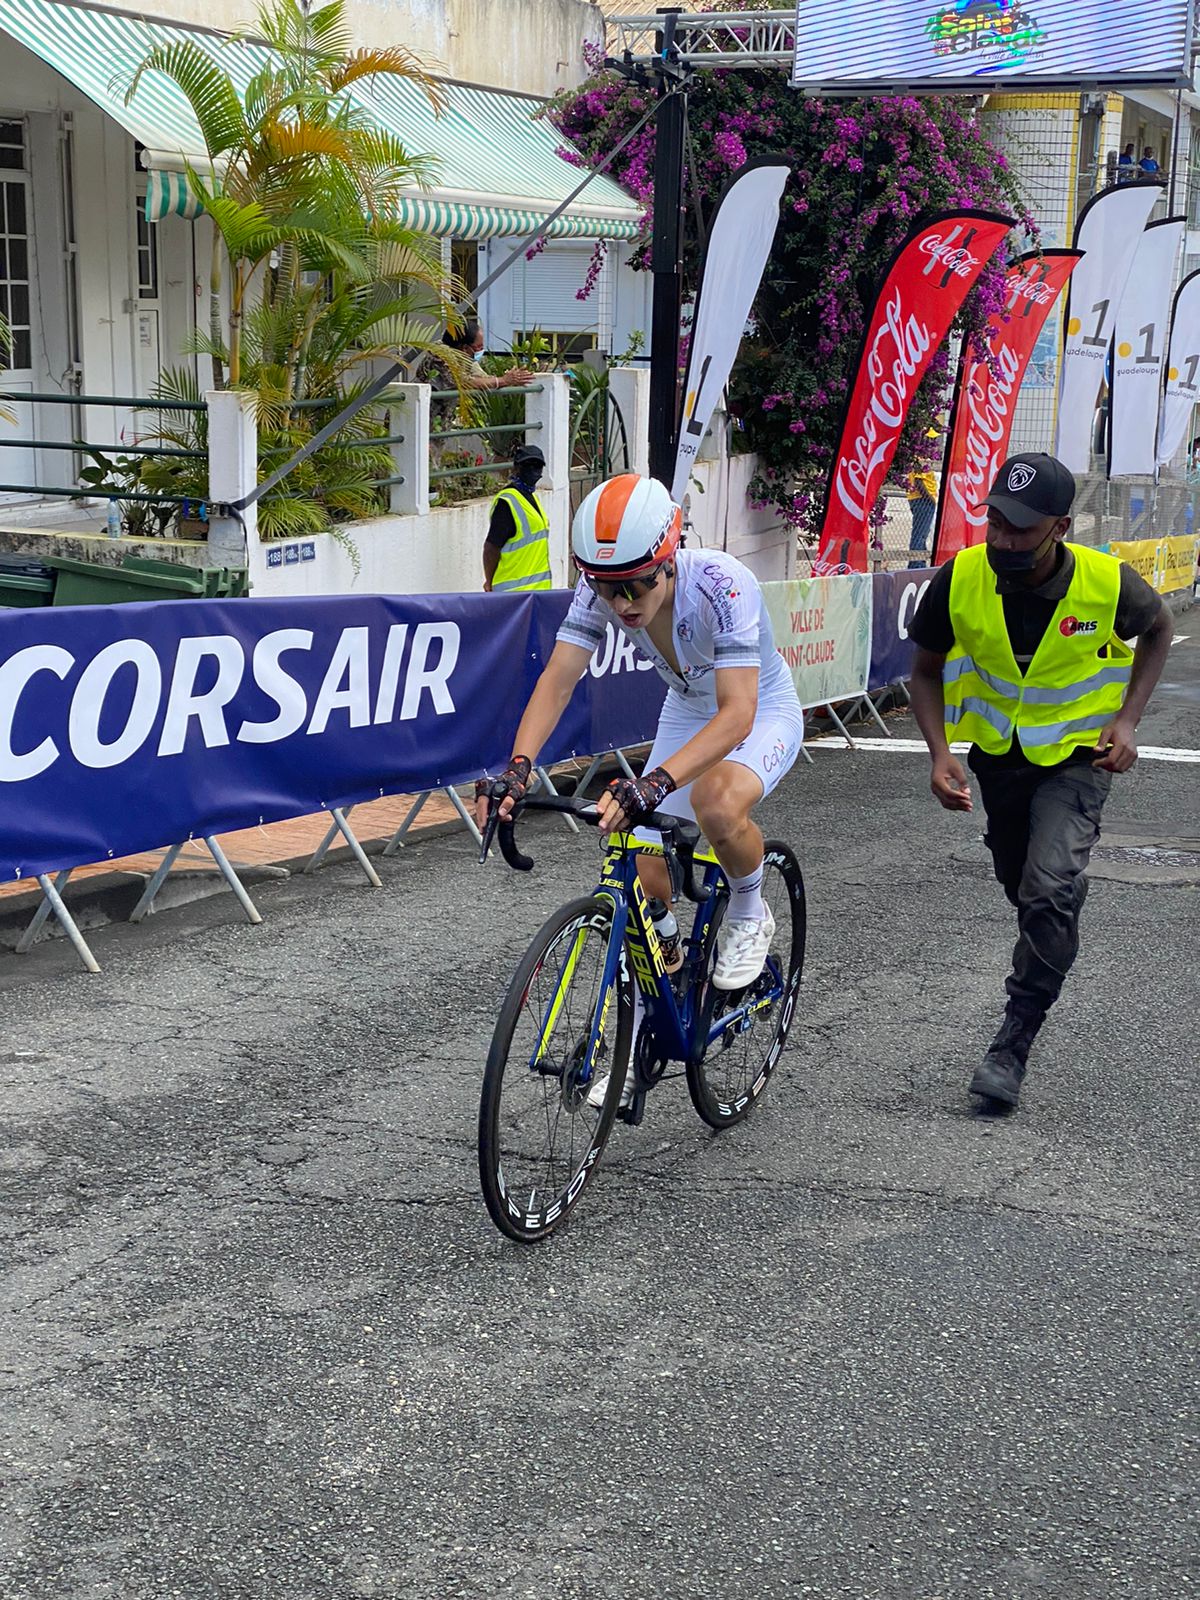     Clément Braz Afonso vainqueur sur le mur de Saint-Claude ! Revivez la 8e étape du Tour cycliste minute par minute

